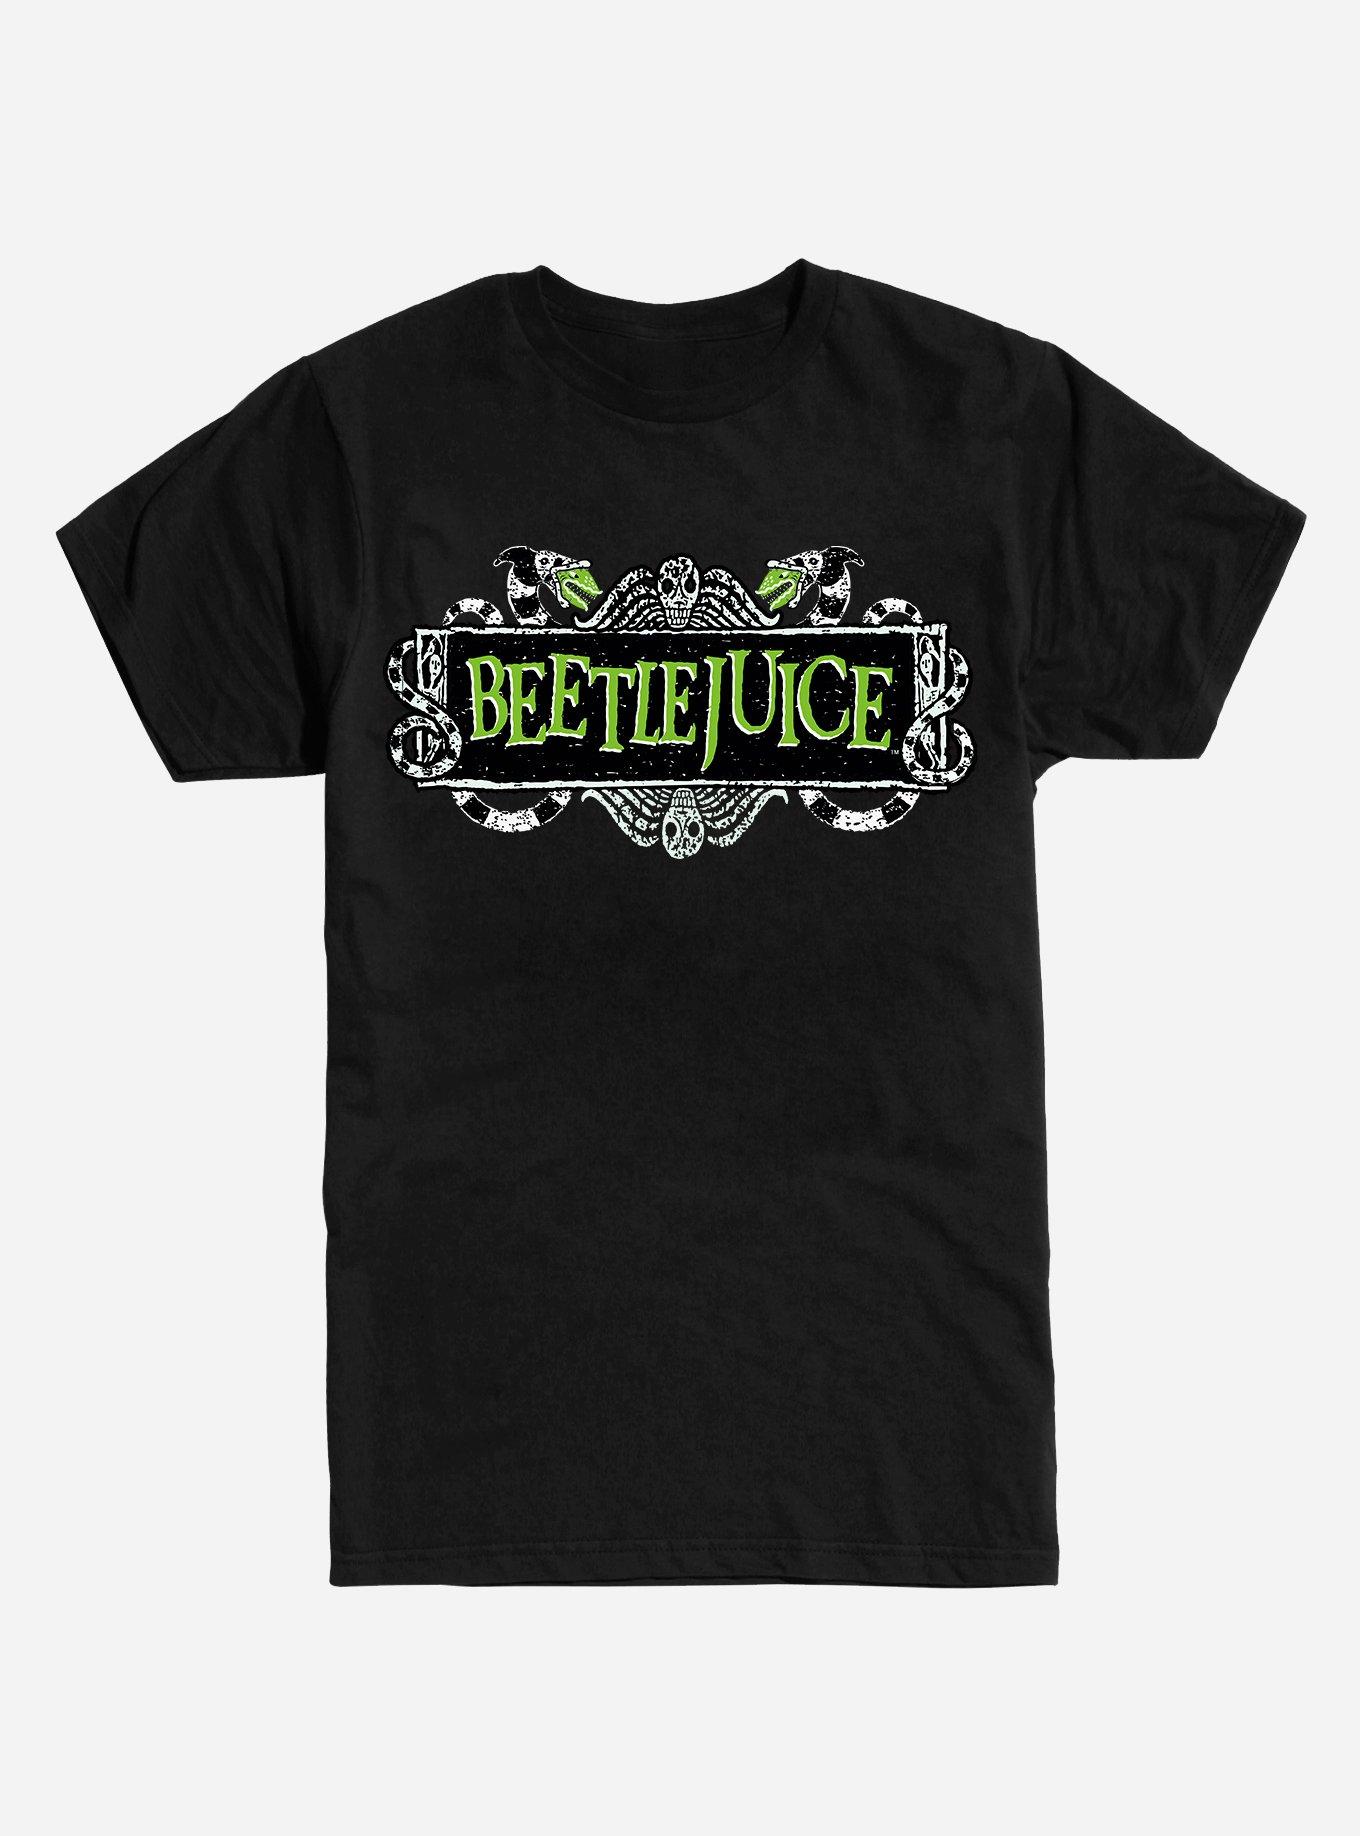 Beetlejuice Title Black T-Shirt, BLACK, hi-res